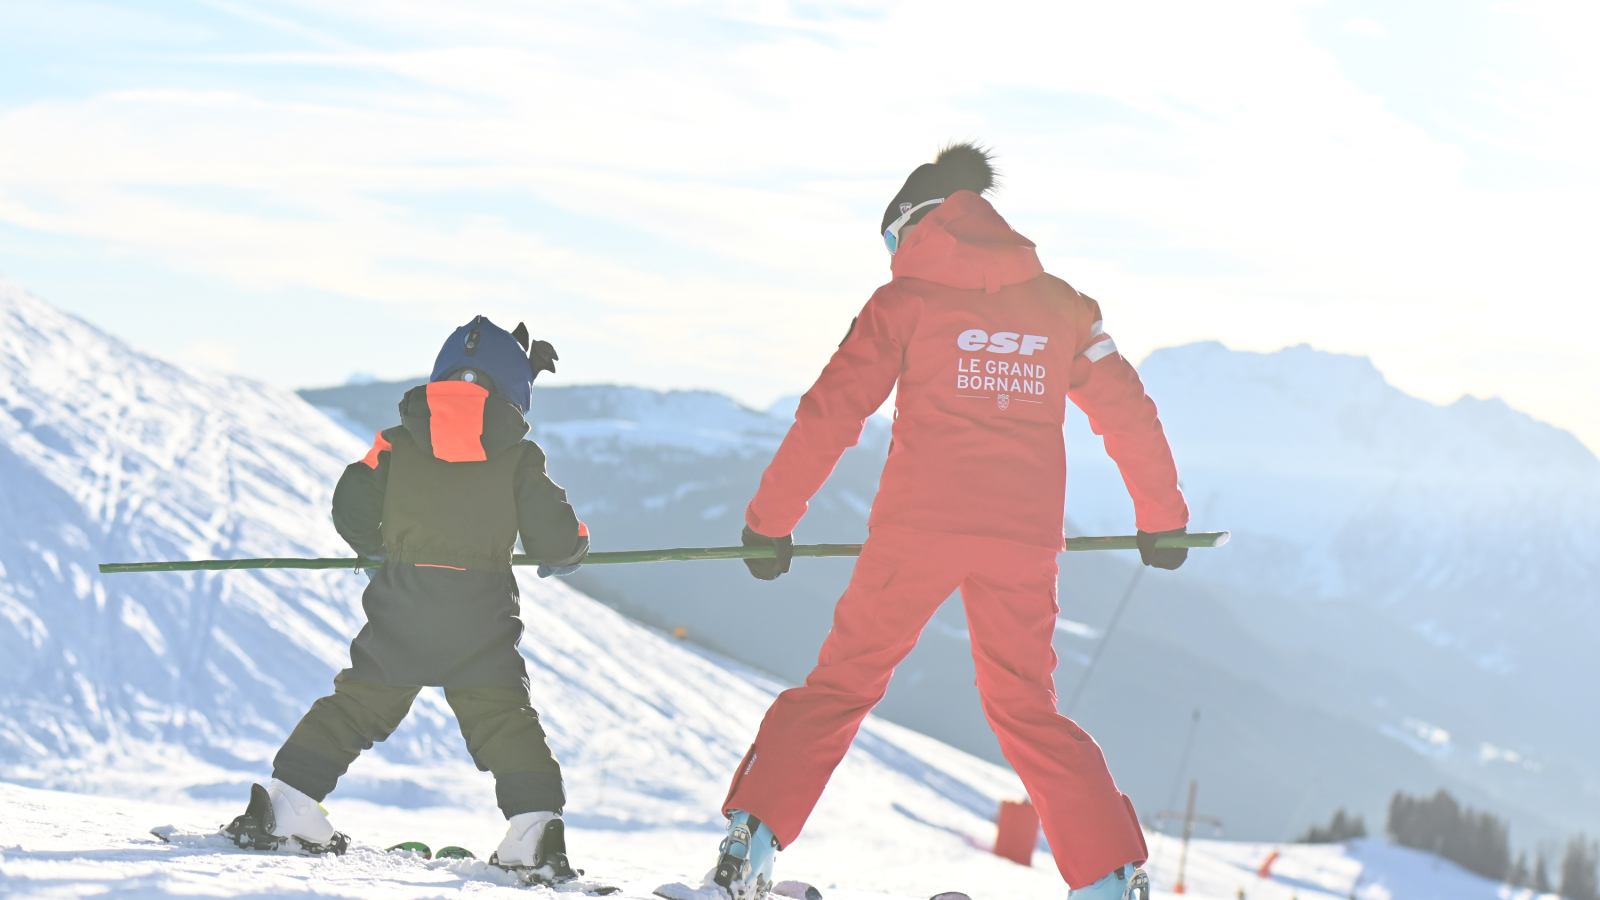 Cours privés ski alpin pour les tout-petits